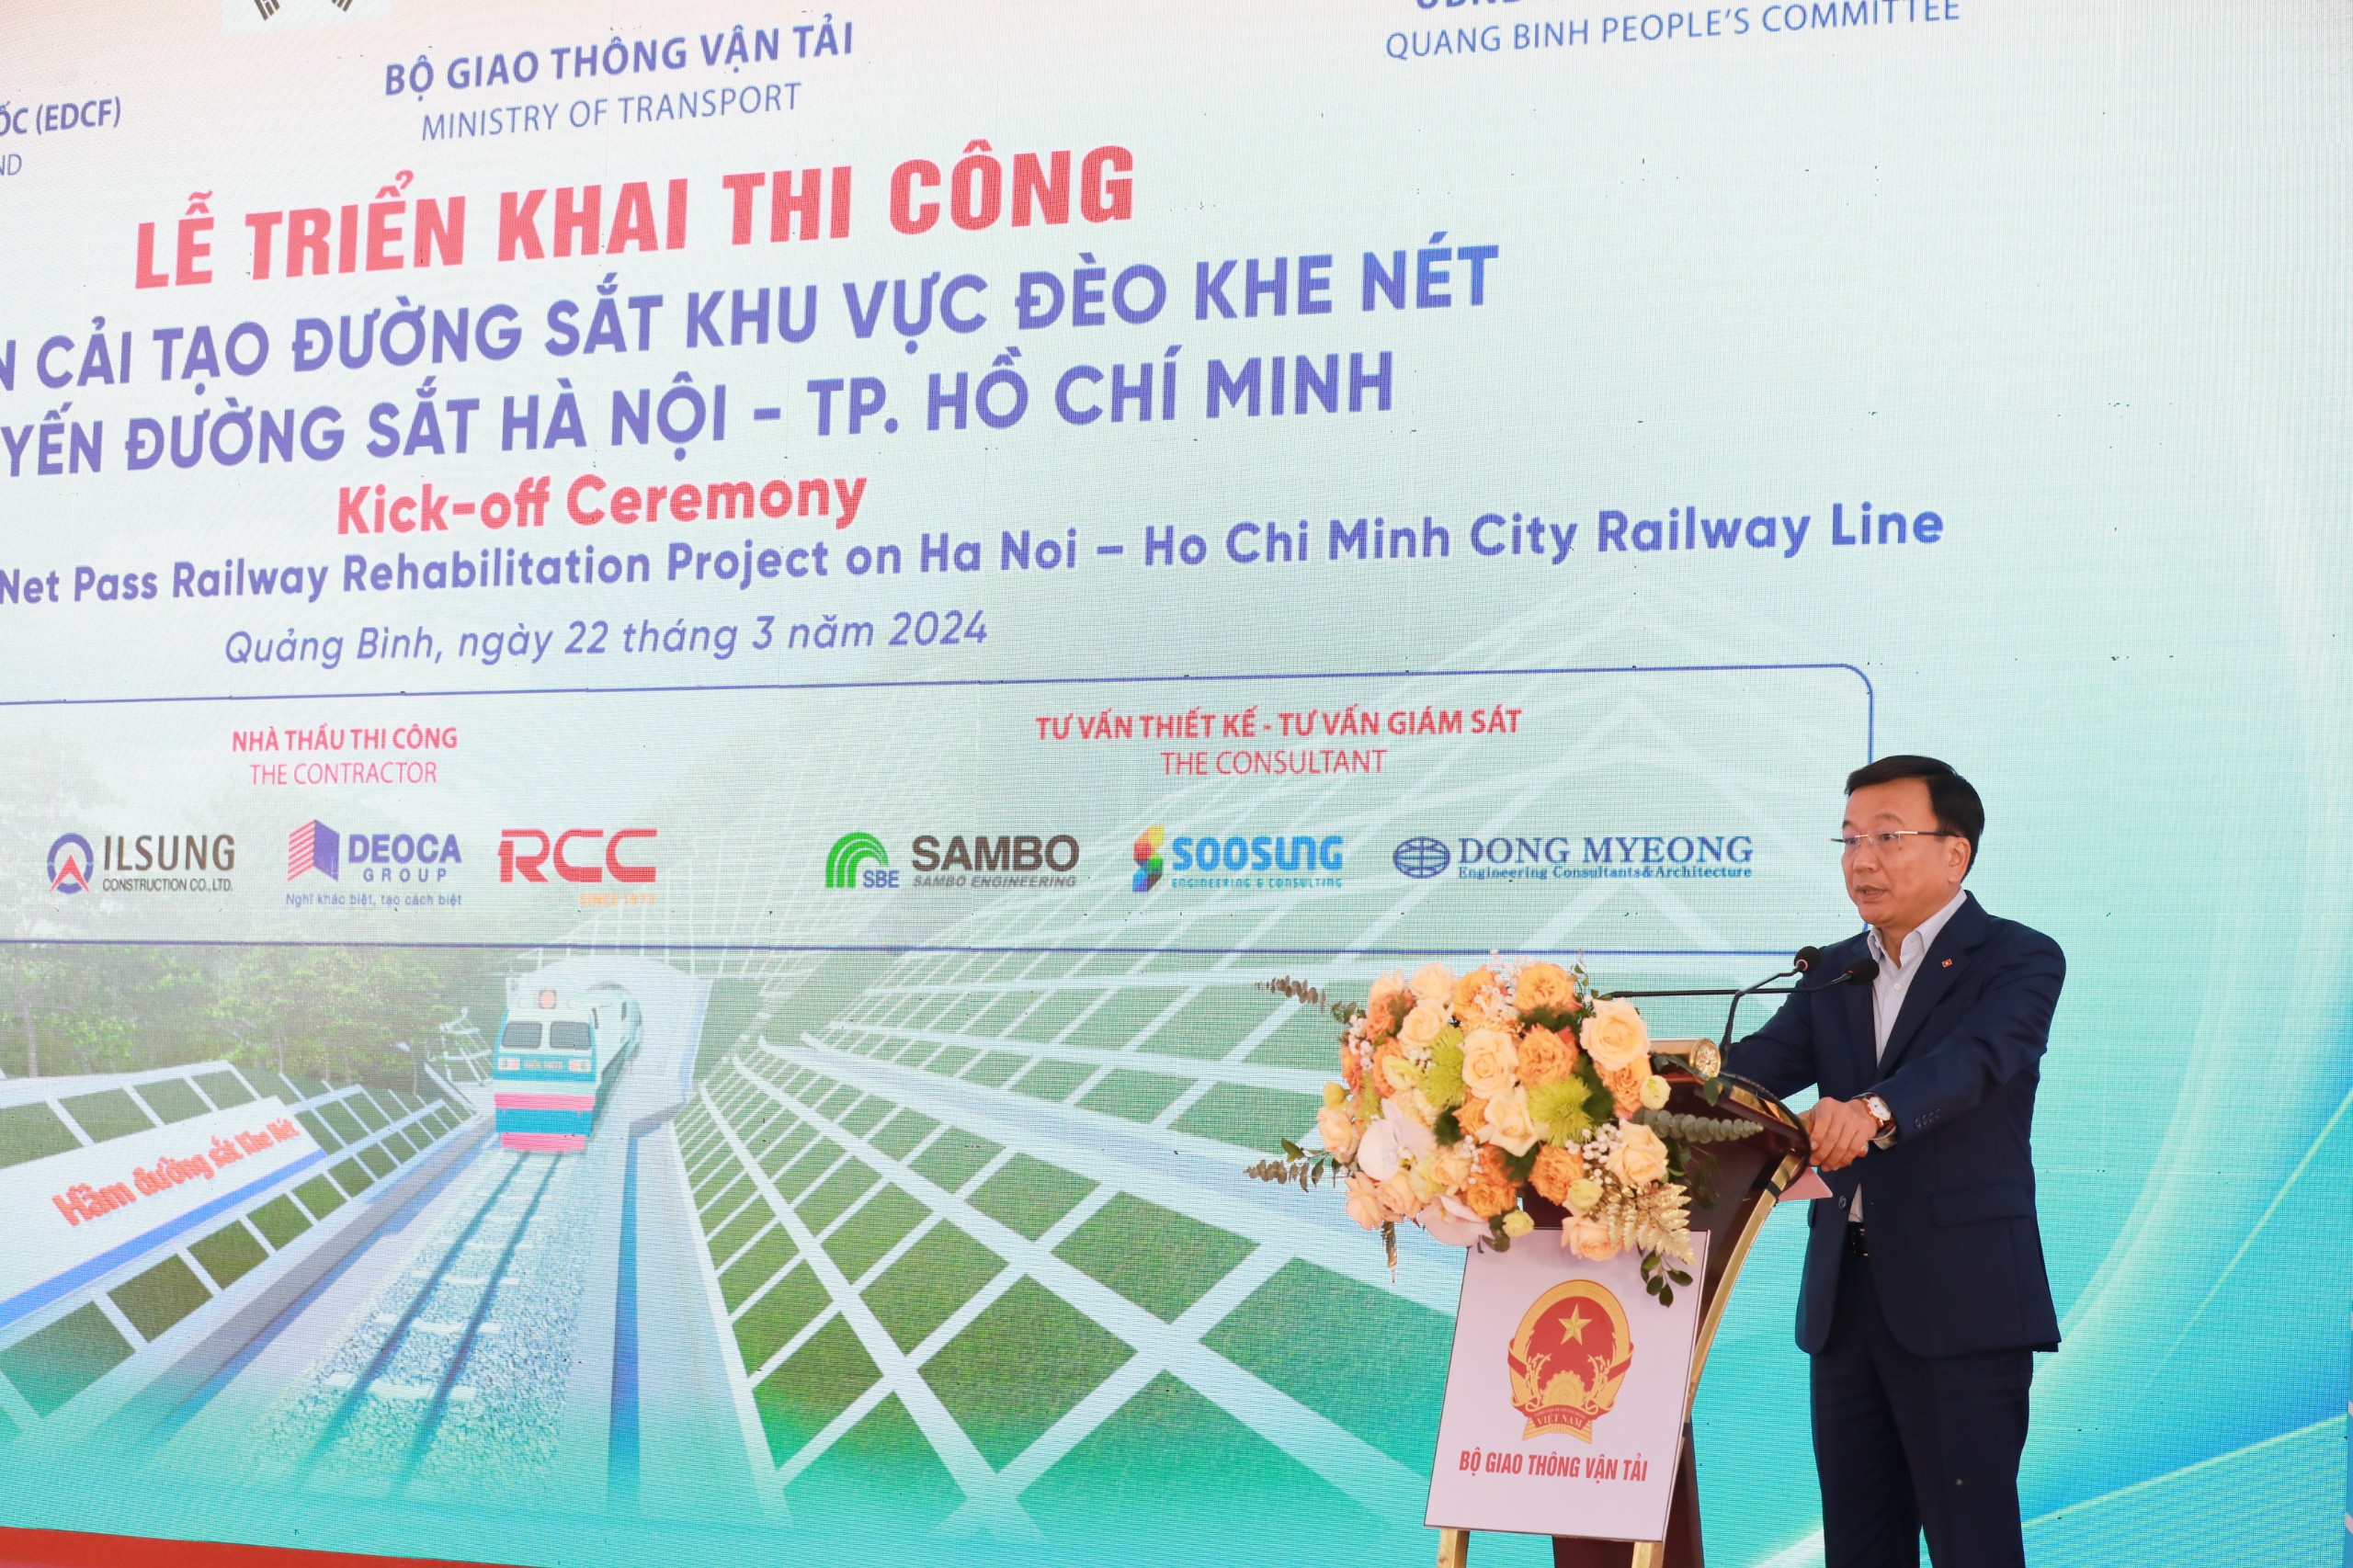 Bộ trưởng GTVT phát lệnh thi công dự án cải tạo đường sắt đèo Khe Nét- Ảnh 3.